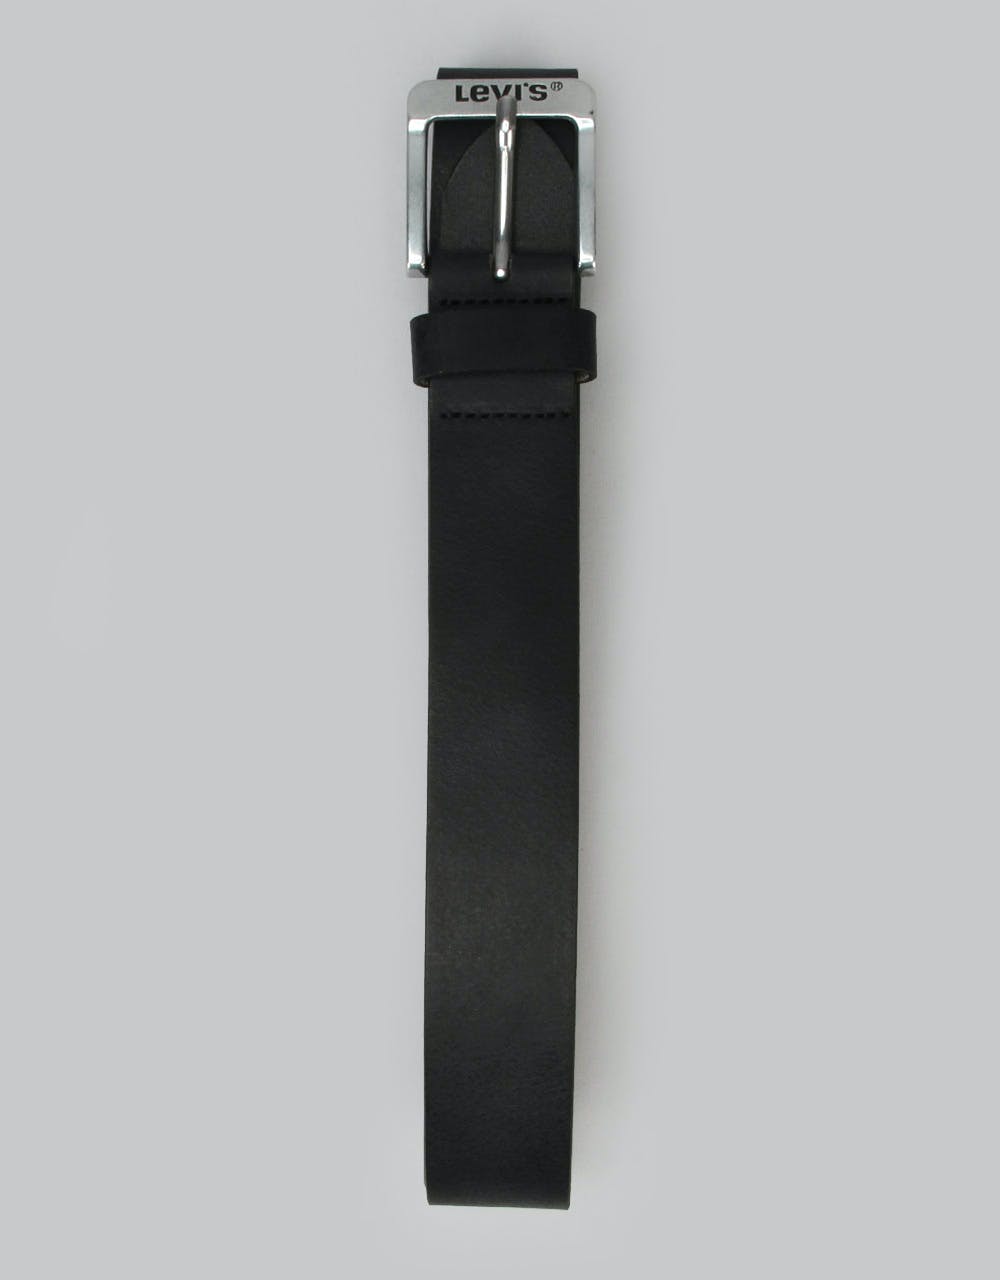 Levis Free Leather Belt - Regular Black